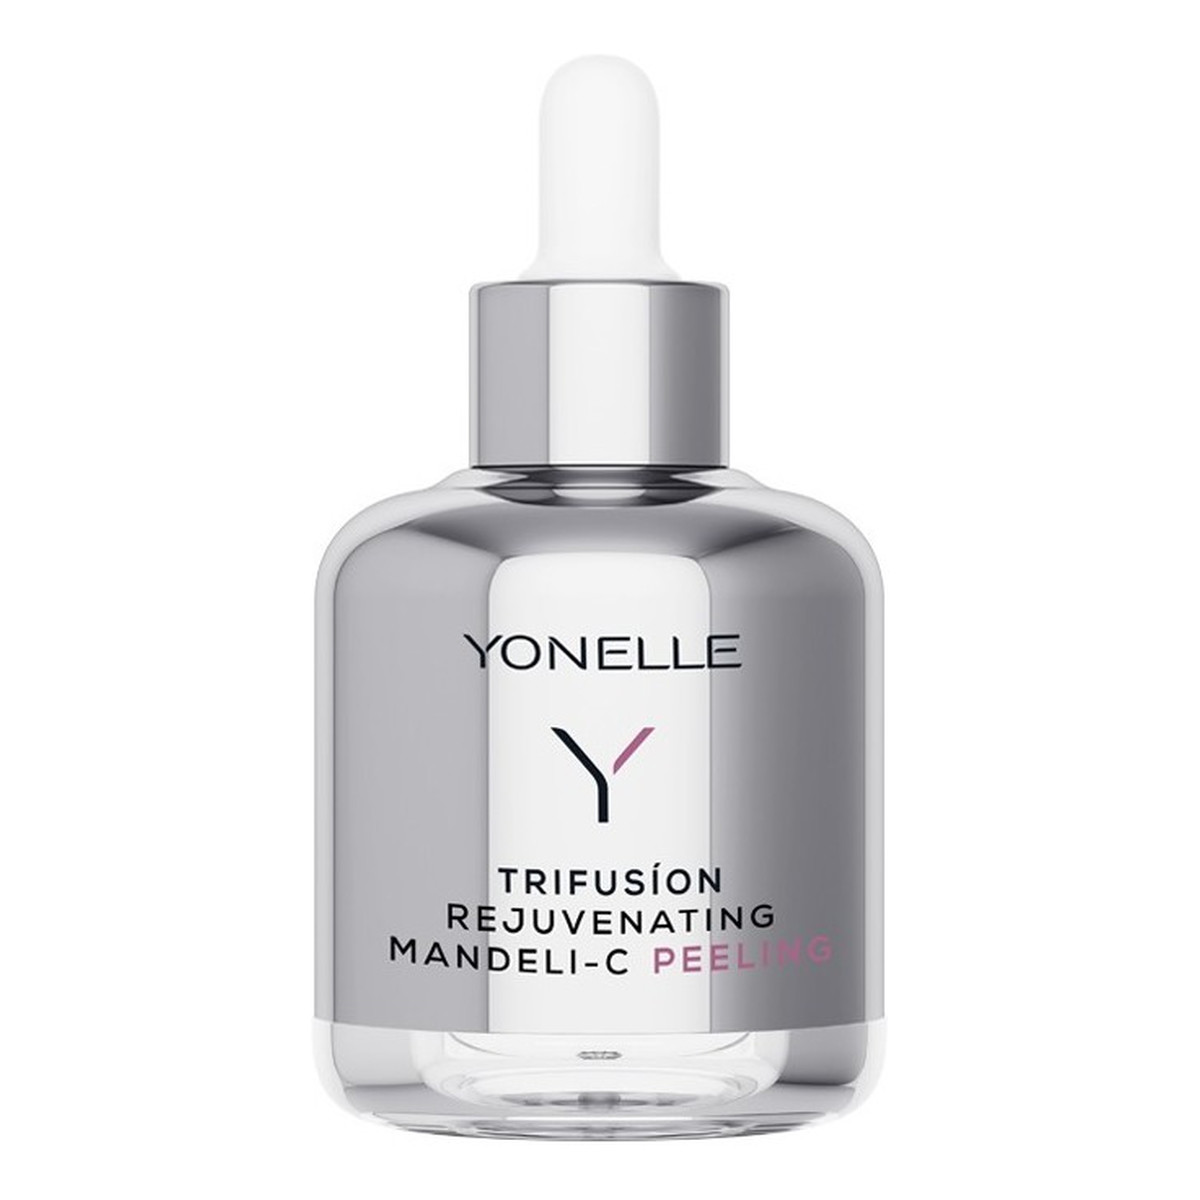 Yonelle Trifusion Rejuvenating Mandeli-C odmładzający peeling migdałowy z witaminą C 50ml